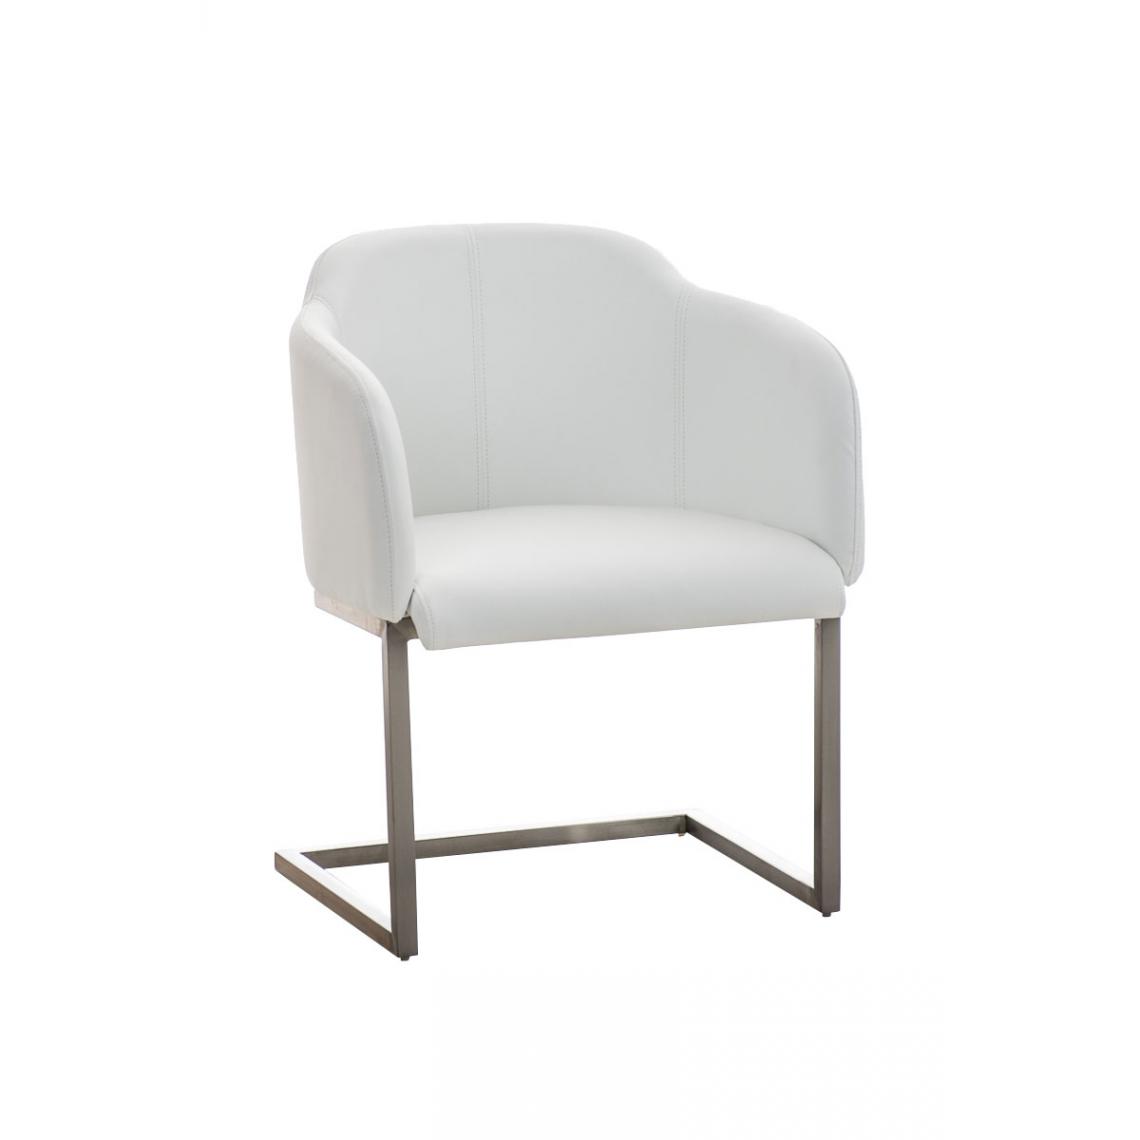 Icaverne - Splendide Chaise visiteur serie Asuncion couleur blanc - Chaises